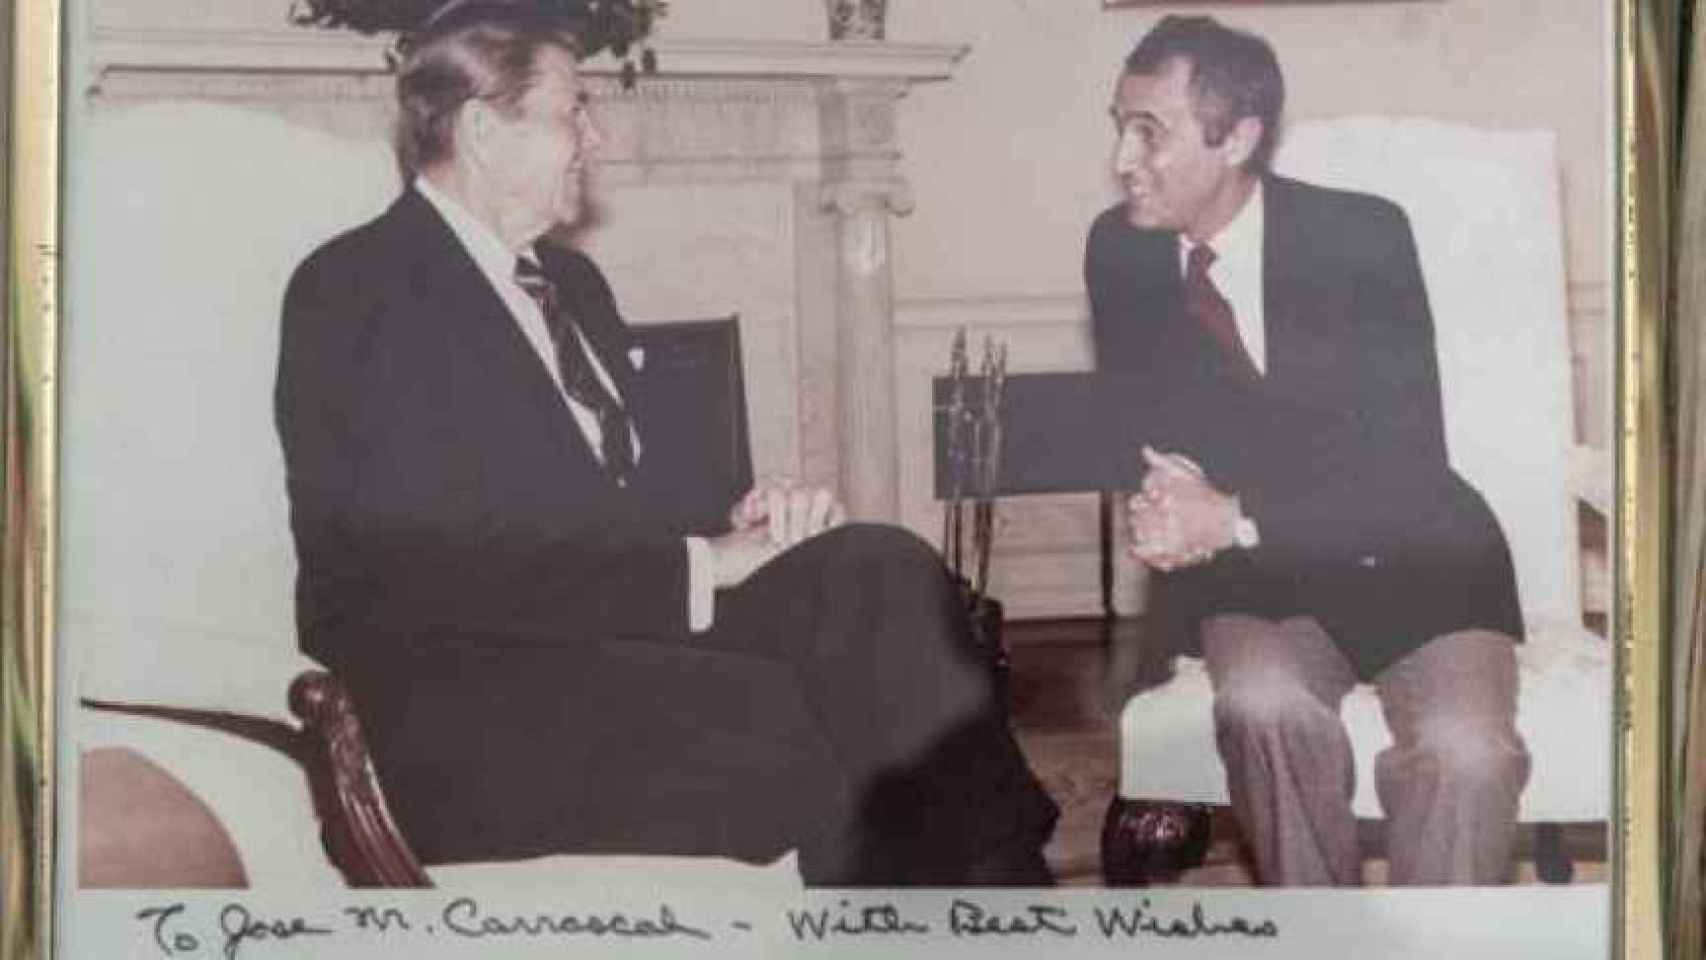 José María Carrascal en una foto junto a Ronald Reagan, a quien entrevistó durante su etapa en Nueva York.